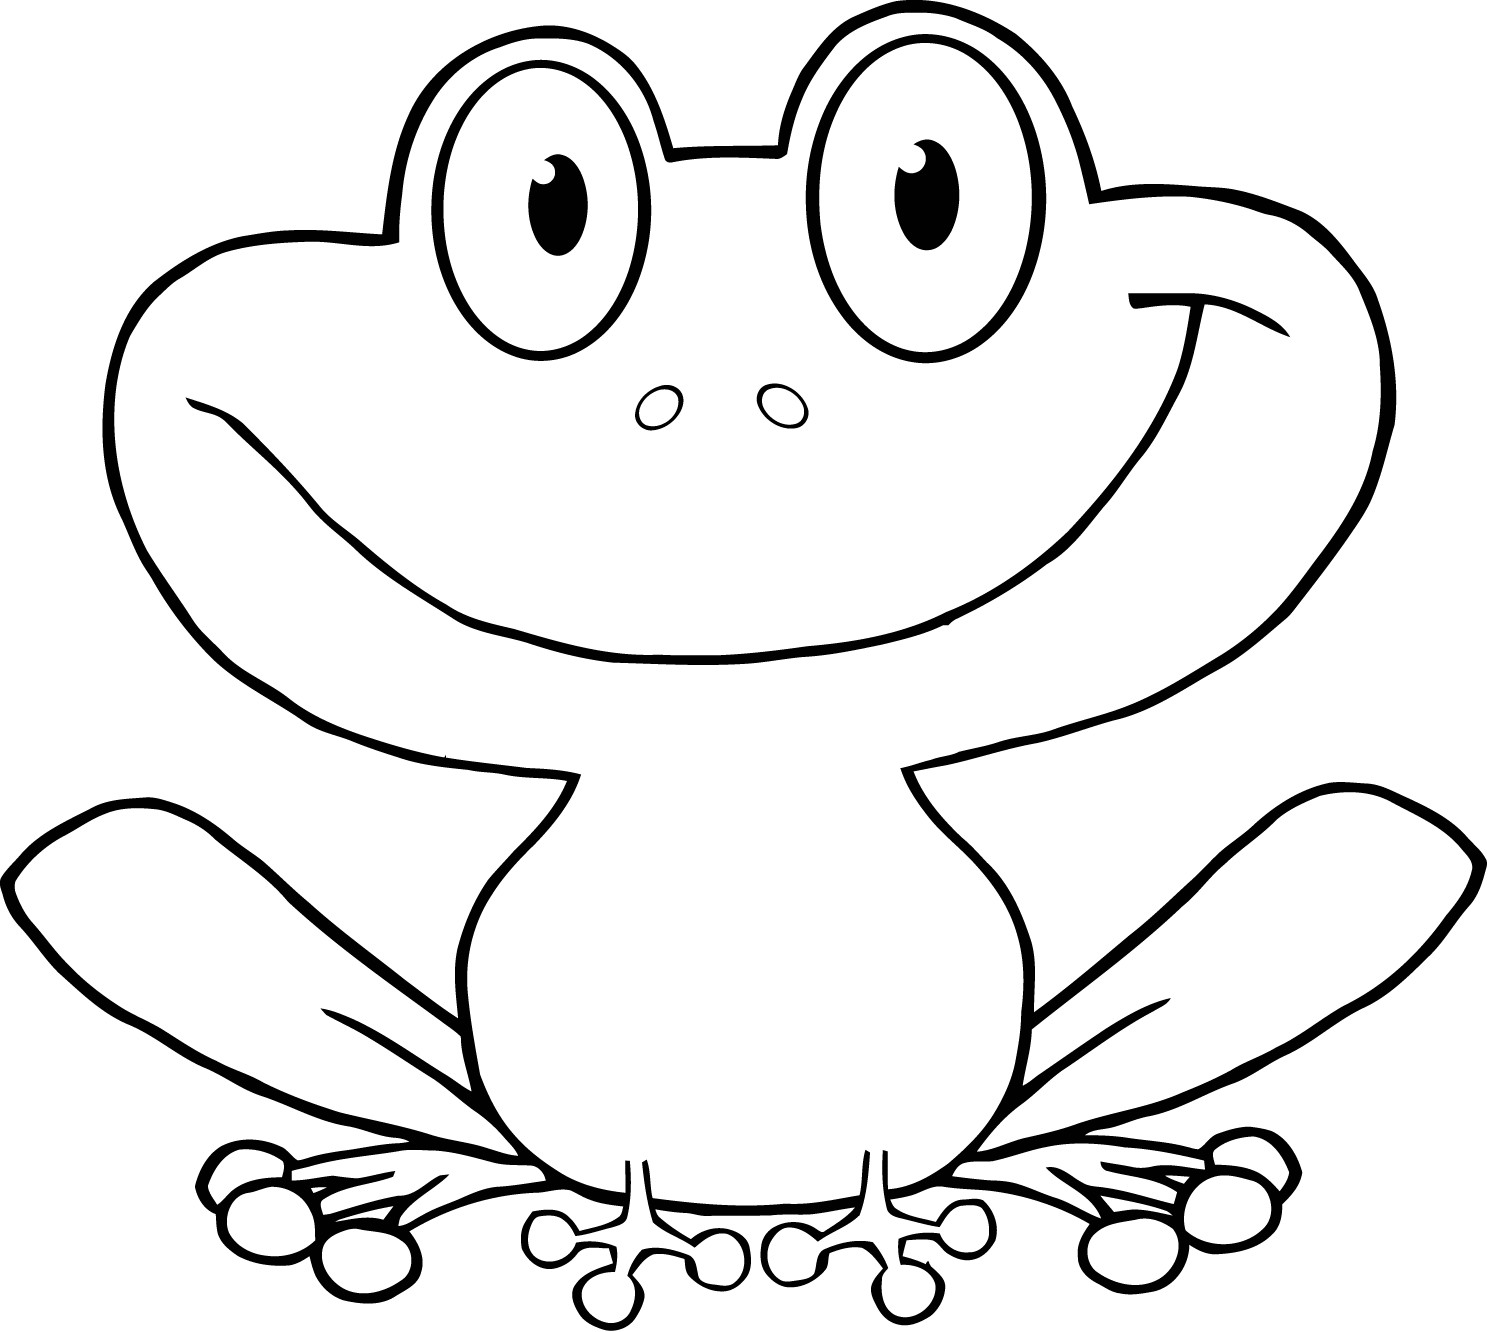 Frosch Ausmalbilder
 Frosch malvorlagen kostenlos zum ausdrucken Ausmalbilder